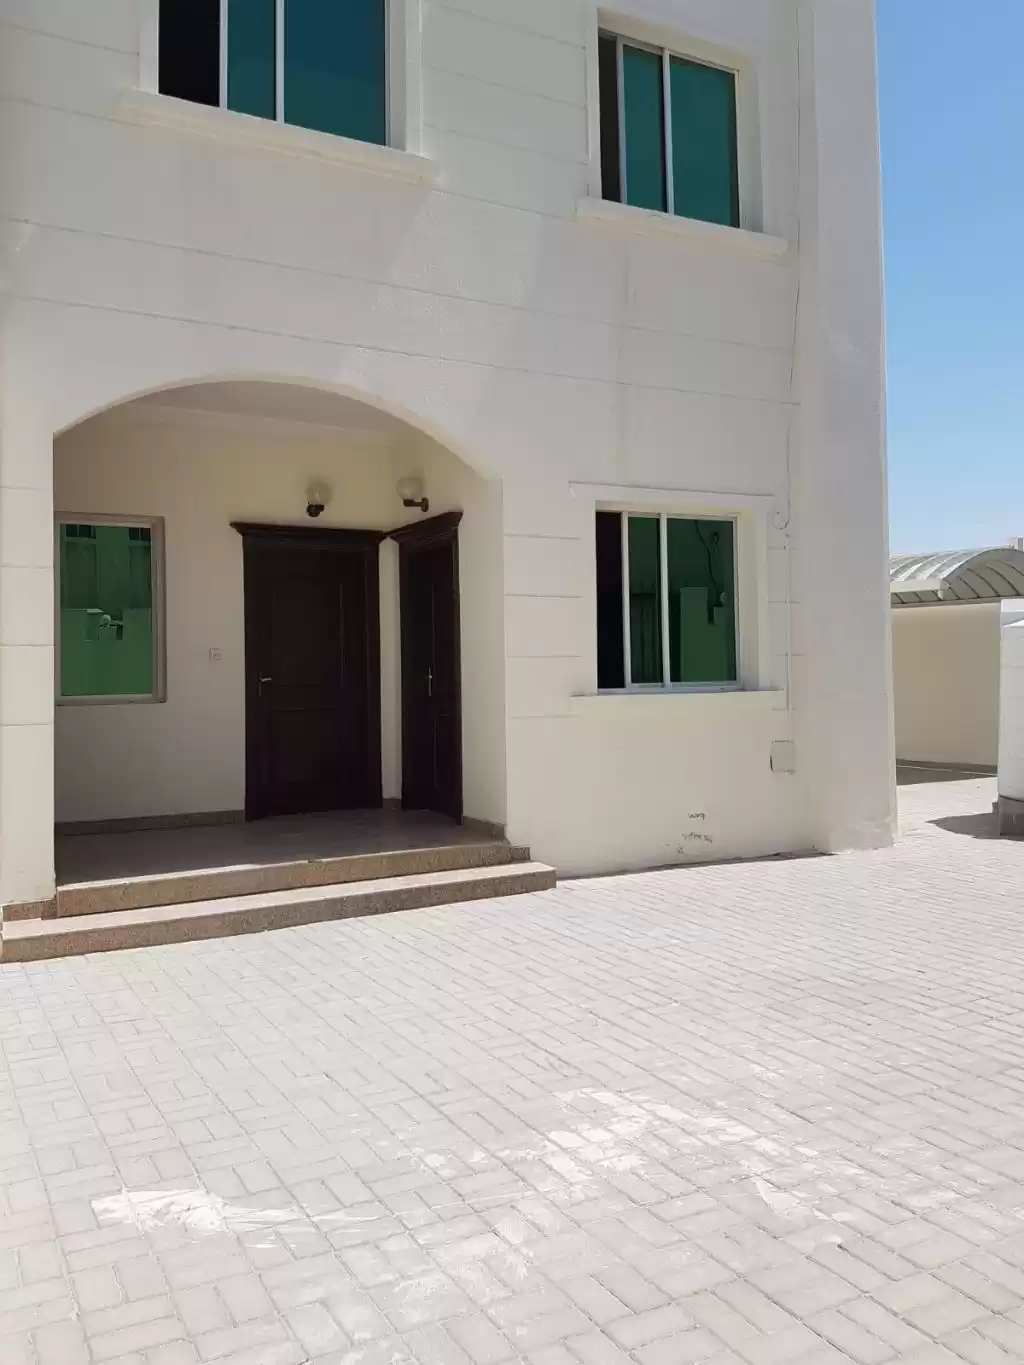 Résidentiel Propriété prête 7 chambres U / f Villa autonome  a louer au Al-Sadd , Doha #13911 - 1  image 